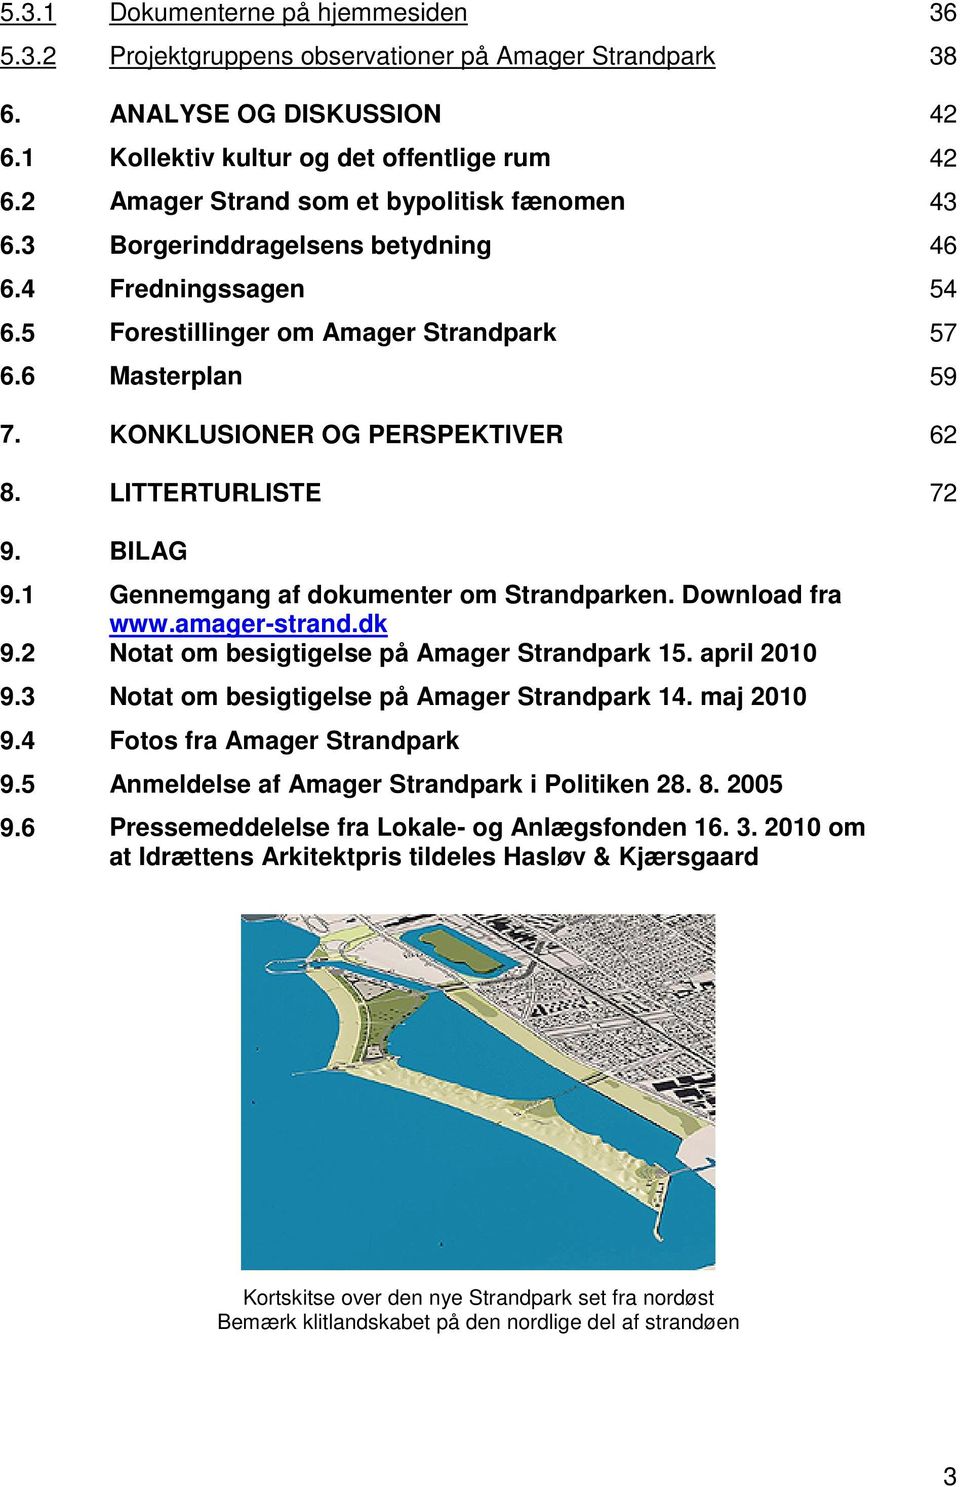 KONKLUSIONER OG PERSPEKTIVER 62 8. LITTERTURLISTE 72 9. BILAG 9.1 Gennemgang af dokumenter om Strandparken. Download fra www.amager-strand.dk 9.2 Notat om besigtigelse på Amager Strandpark 15.